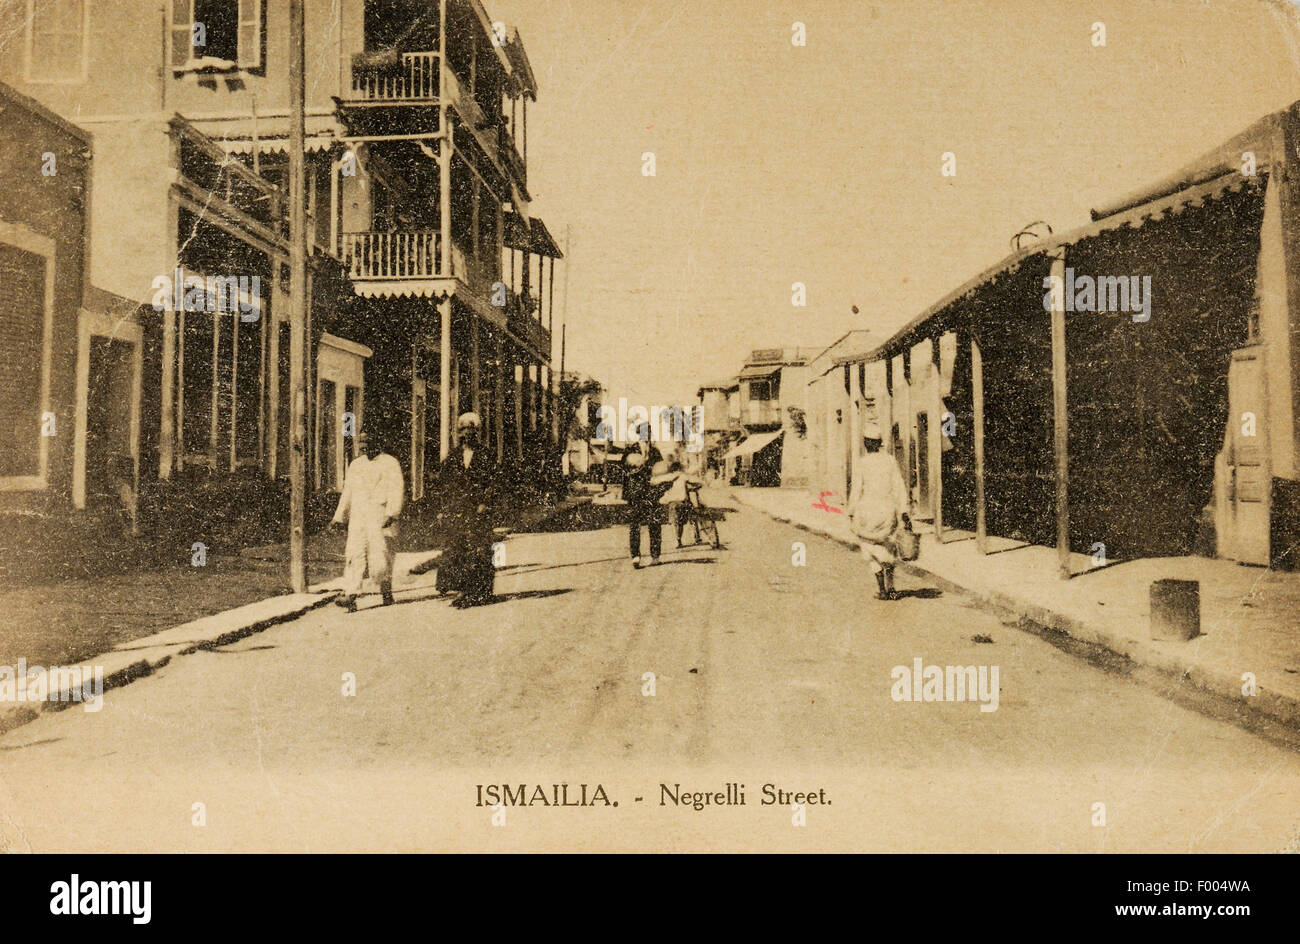 Ismailia, Ägypten - 1900--Negrelli Straße in den Suez-Kanal Stadt Ismailia, das Hauptquartier des Suez-Kanals.  COPYRIGHT FOTOSAMMLUNG VON BARRY IVERSON Stockfoto